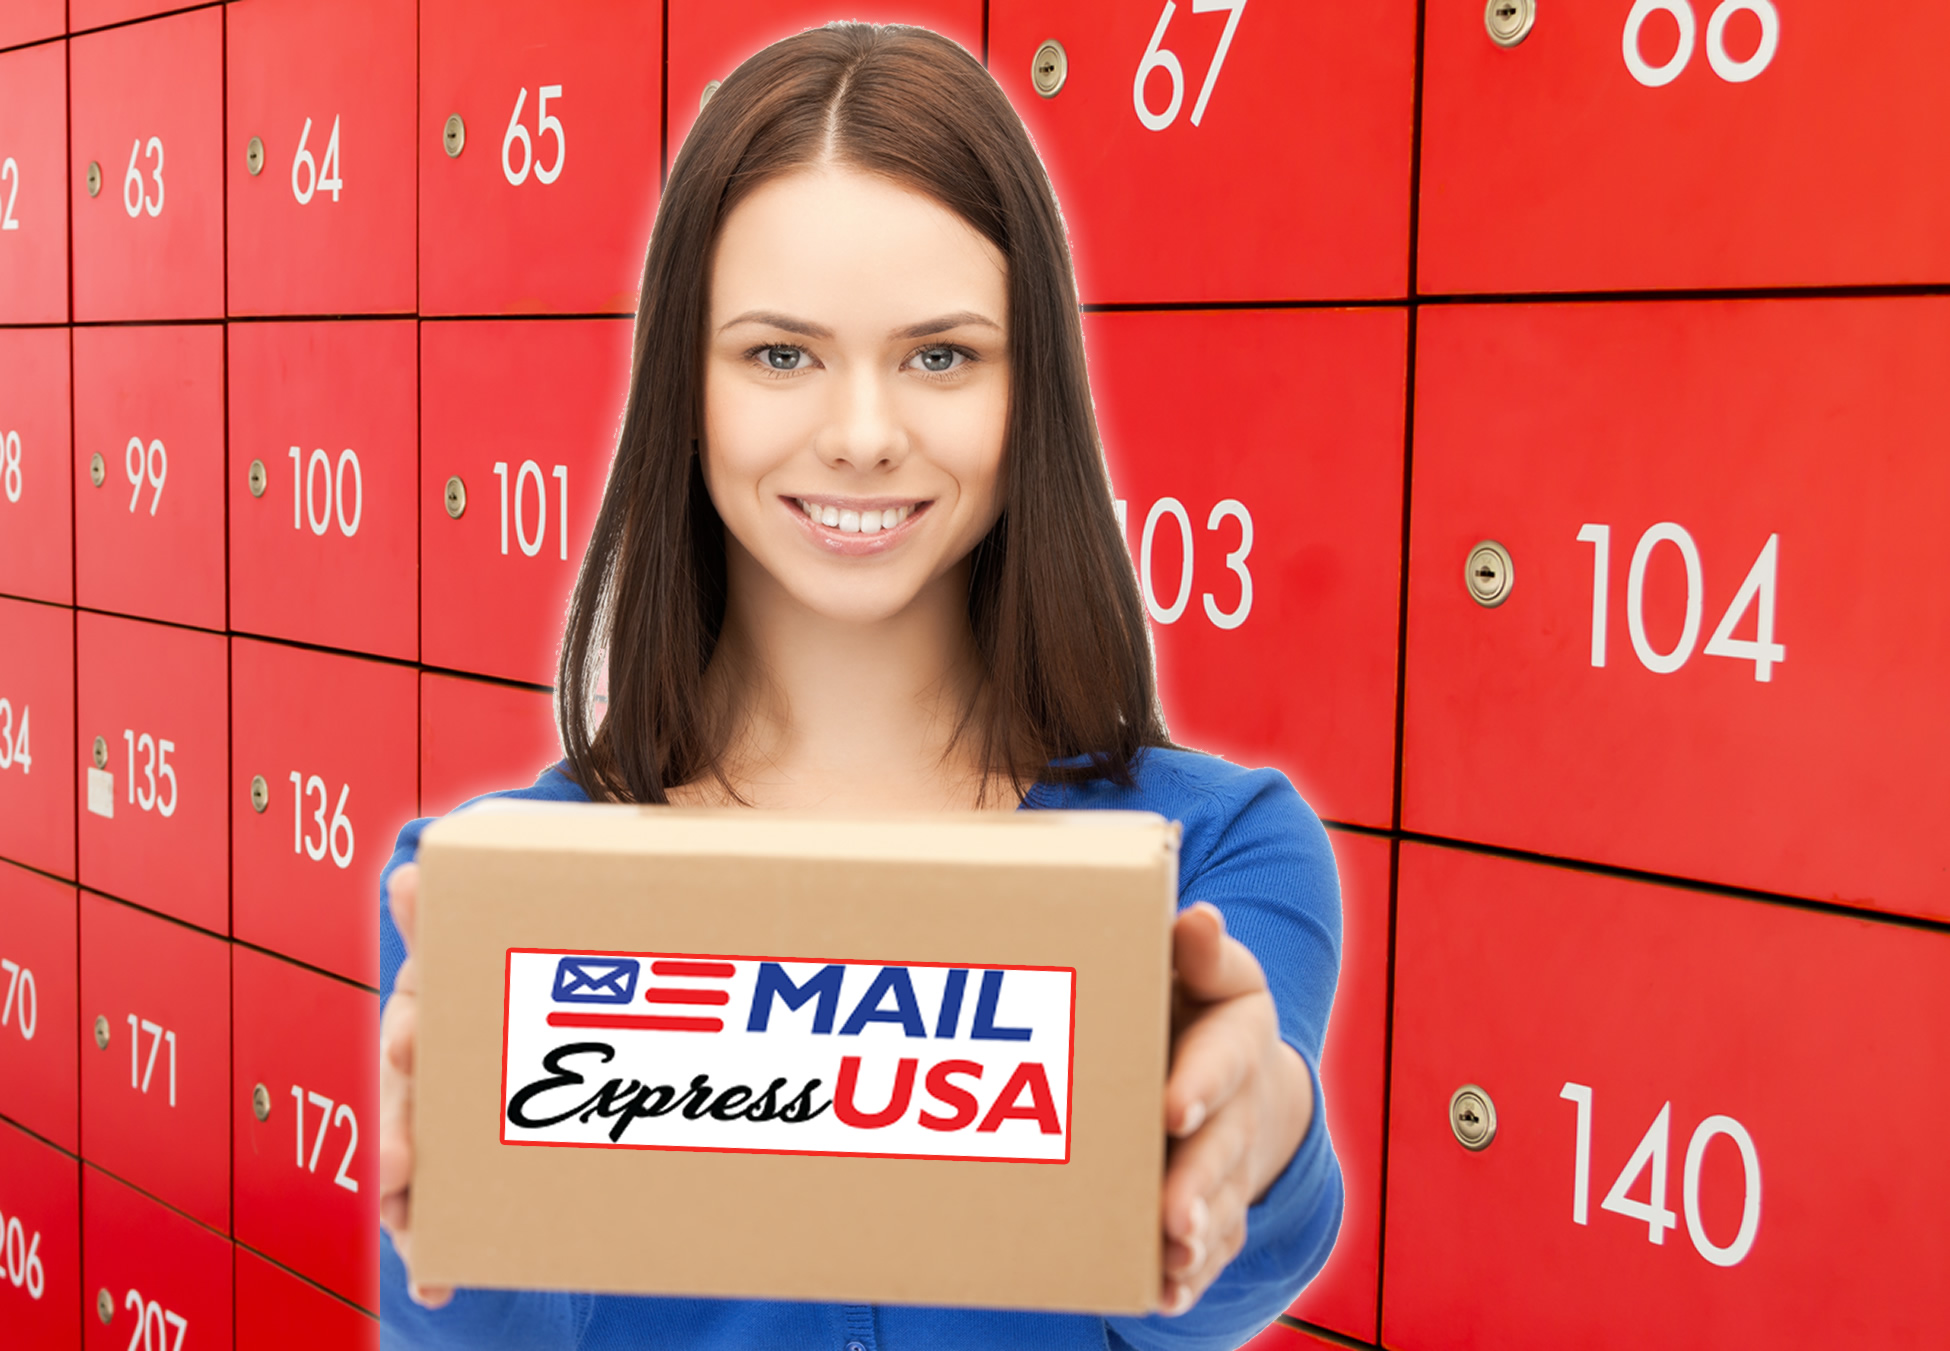 Mail Express USA | Apartados Postales | Su dirección en USA